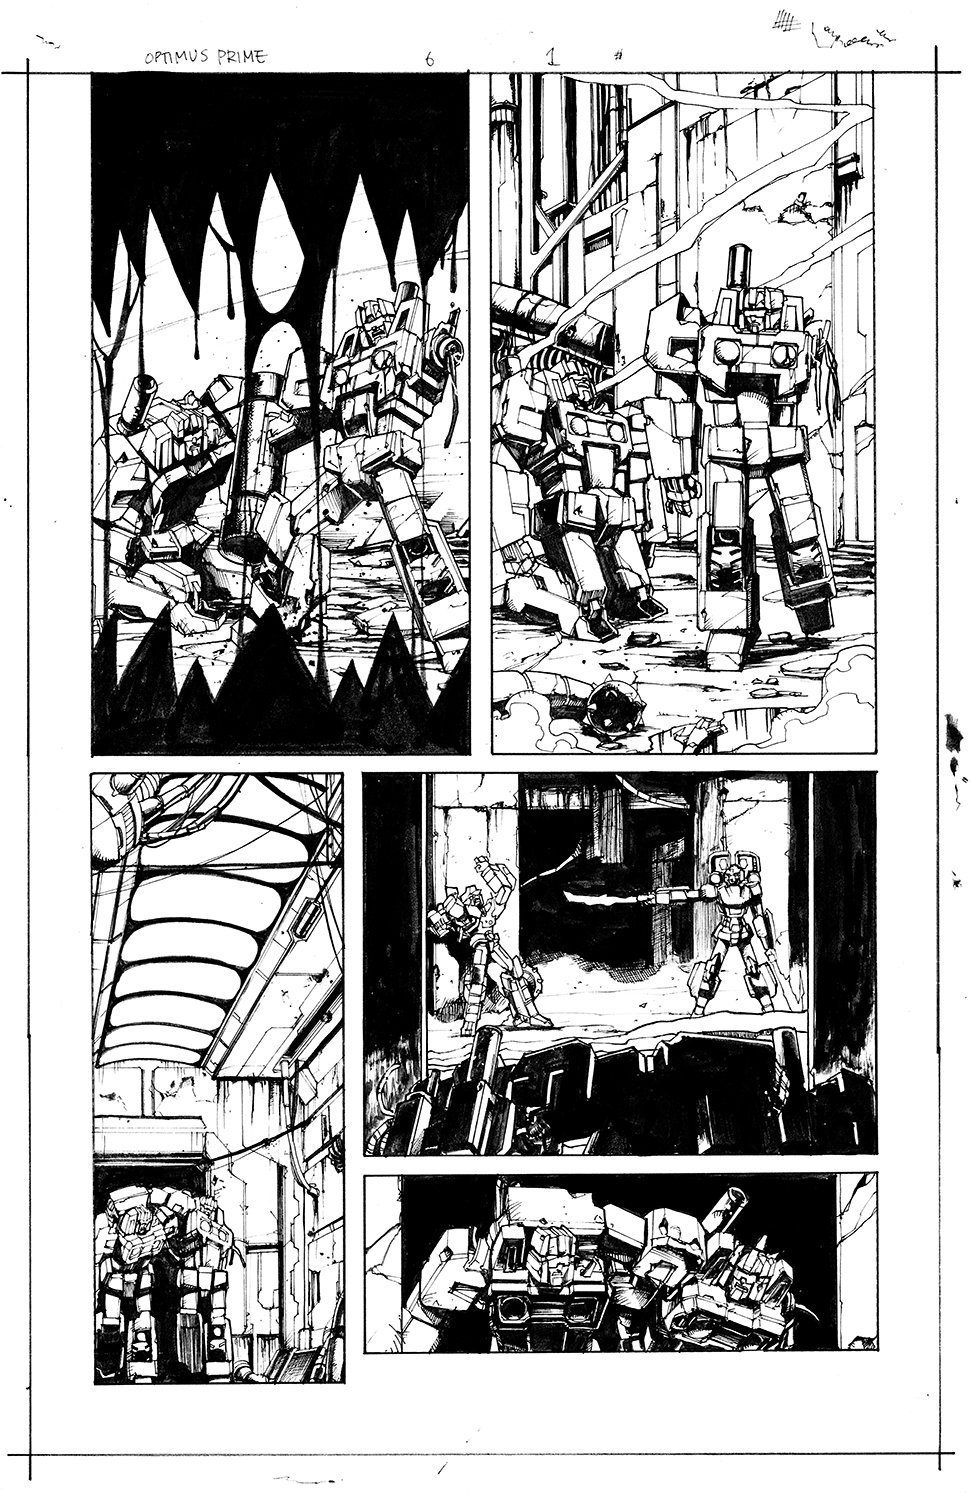 Optimus Prime #6 Page 01